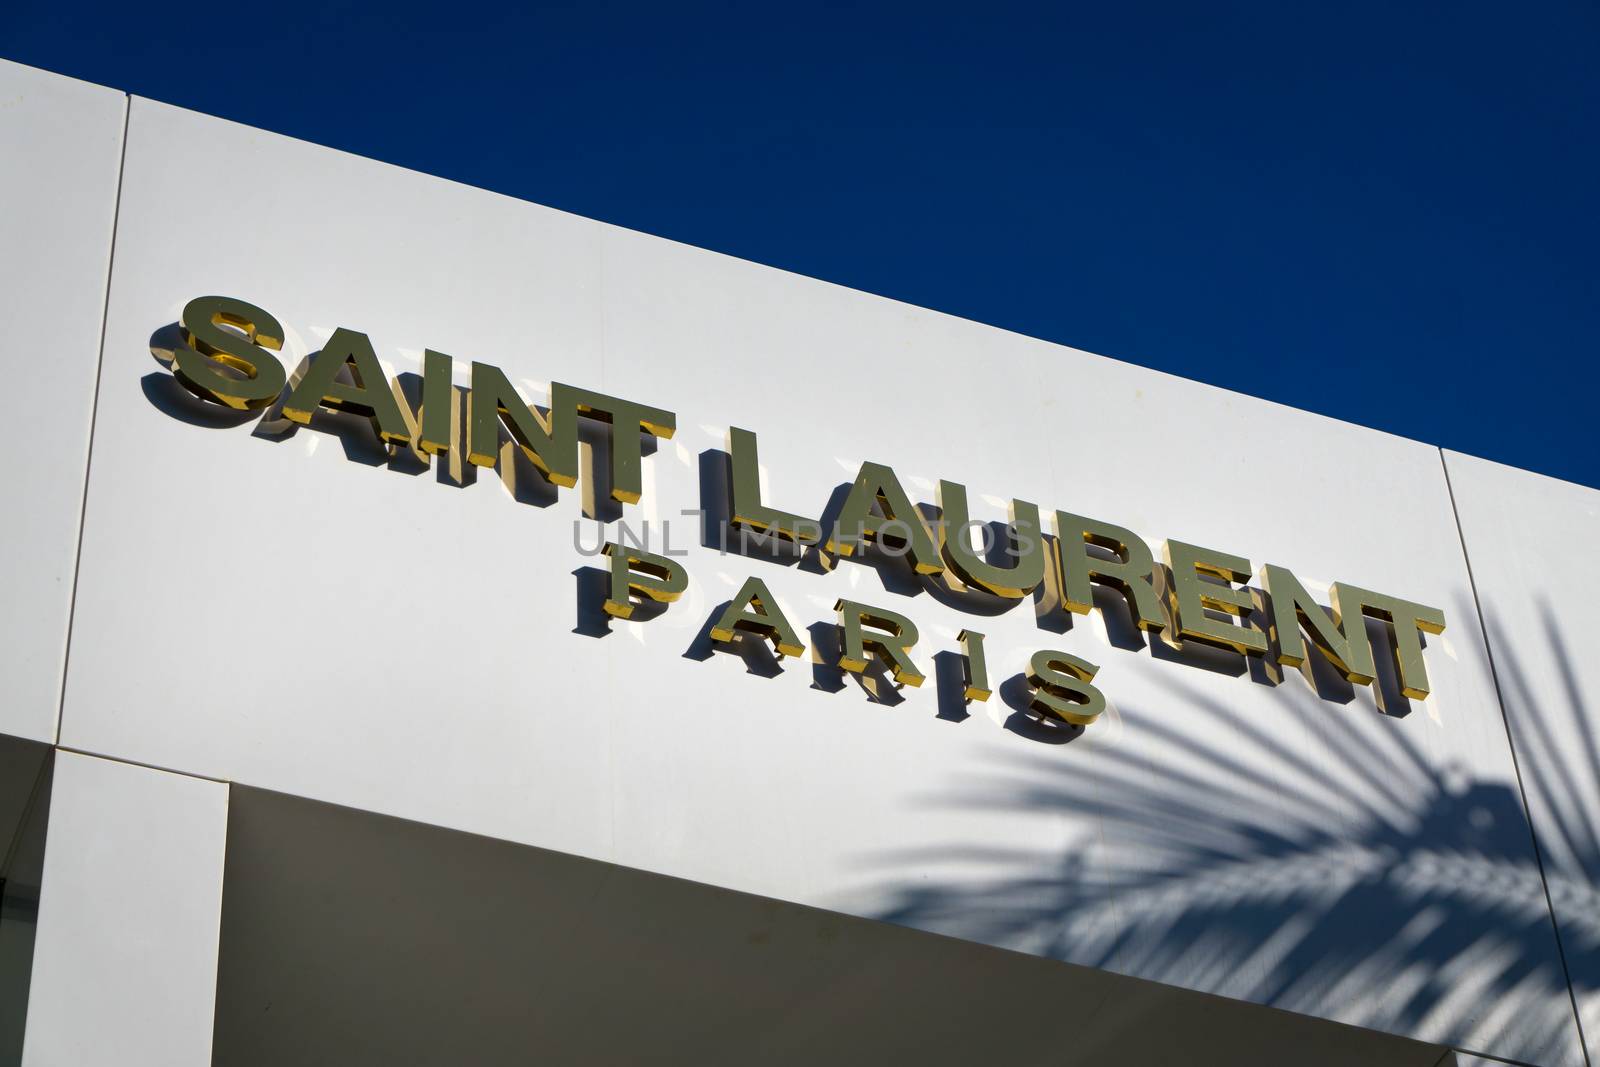 Saint Laurent Paris Retail Store exterior by wolterk